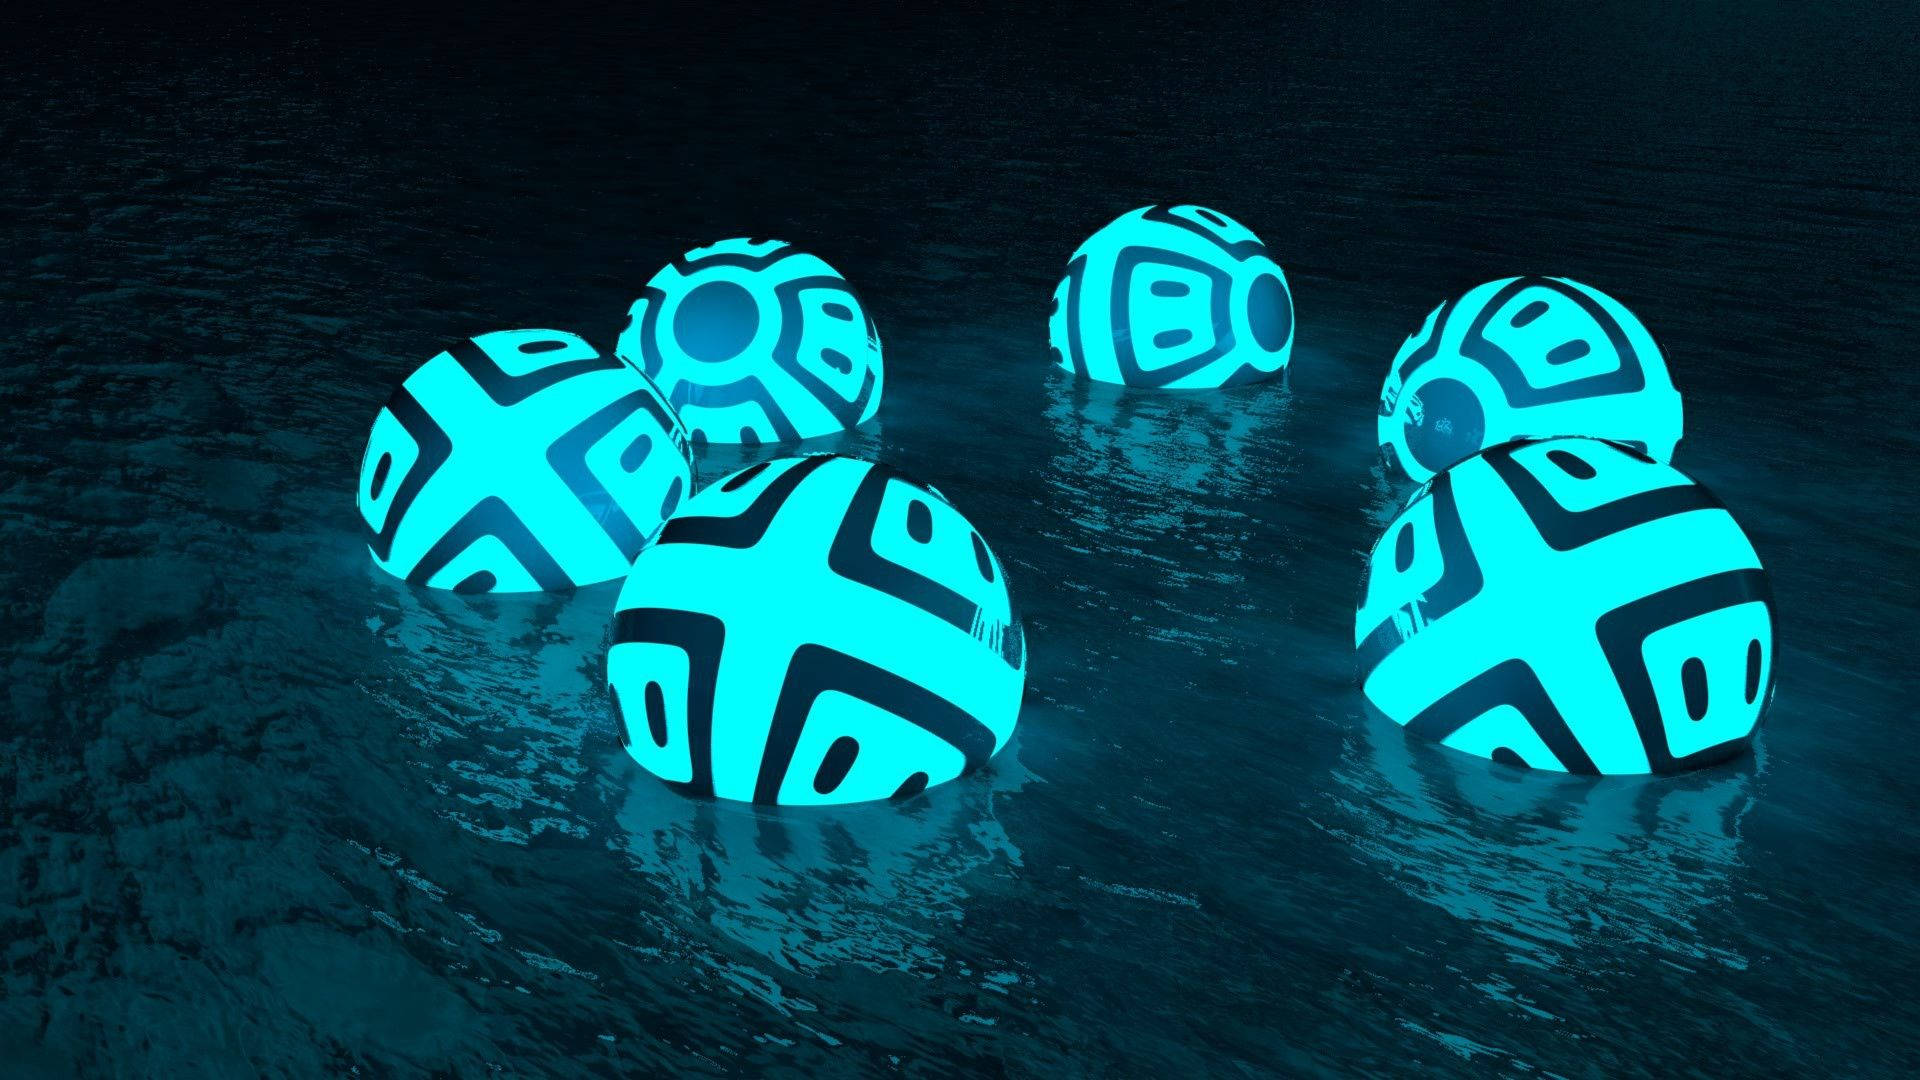 4d Neon Spheres